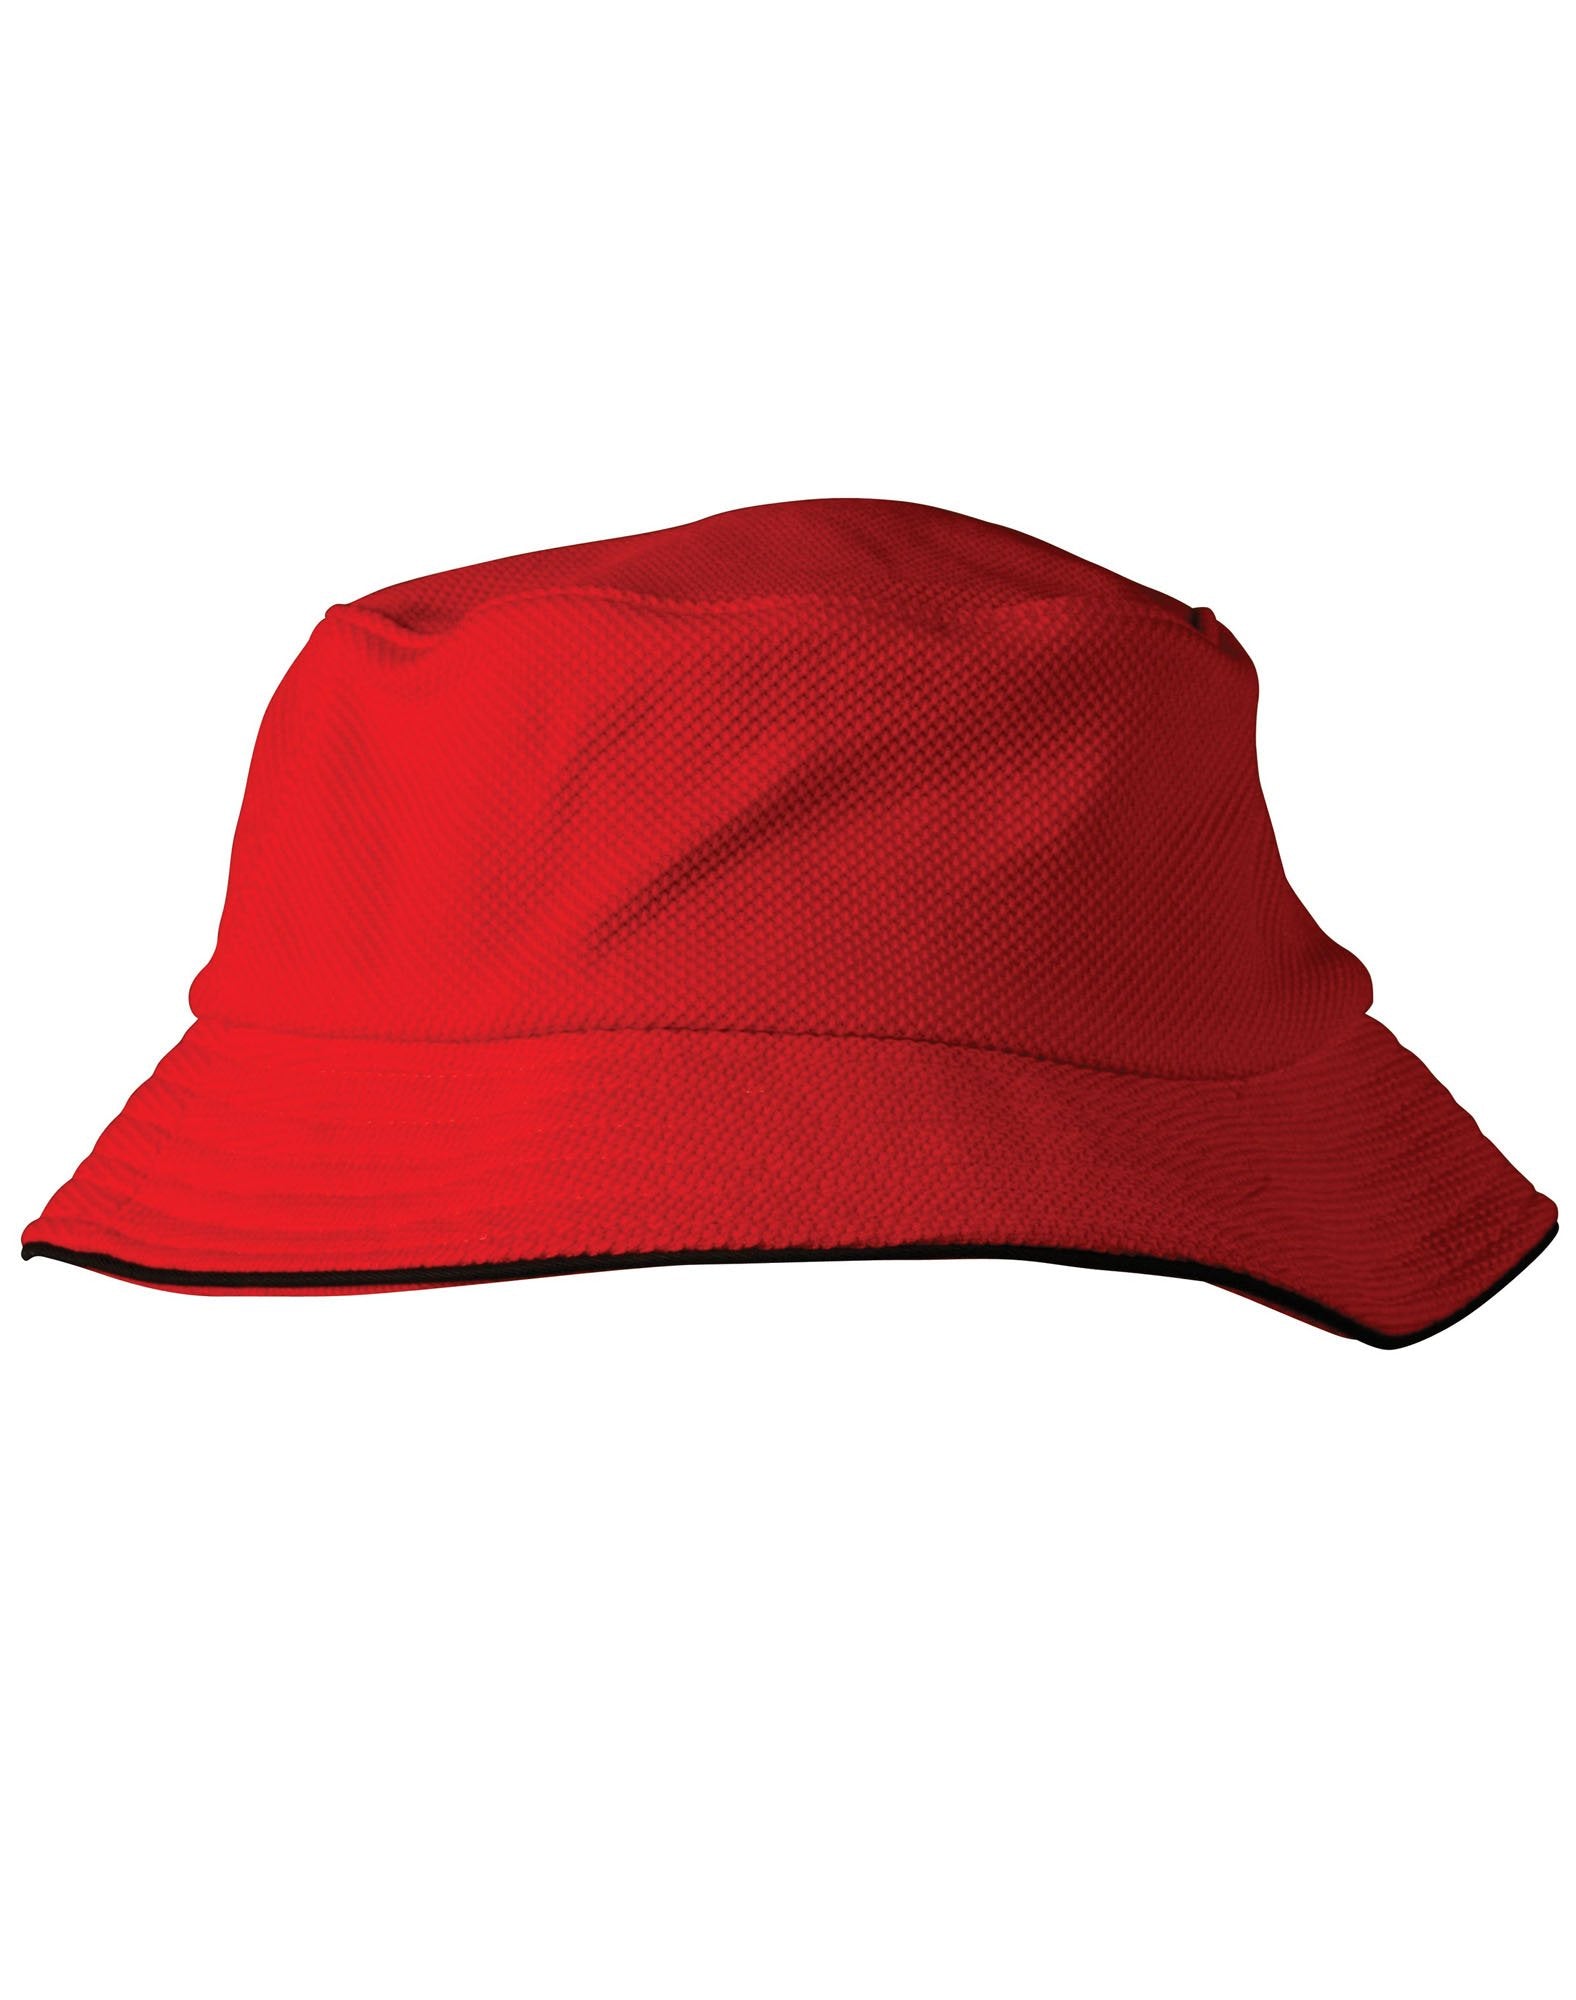 CH71 Pique Mesh With Sandwich Bucket Hat - Star Uniforms Australia